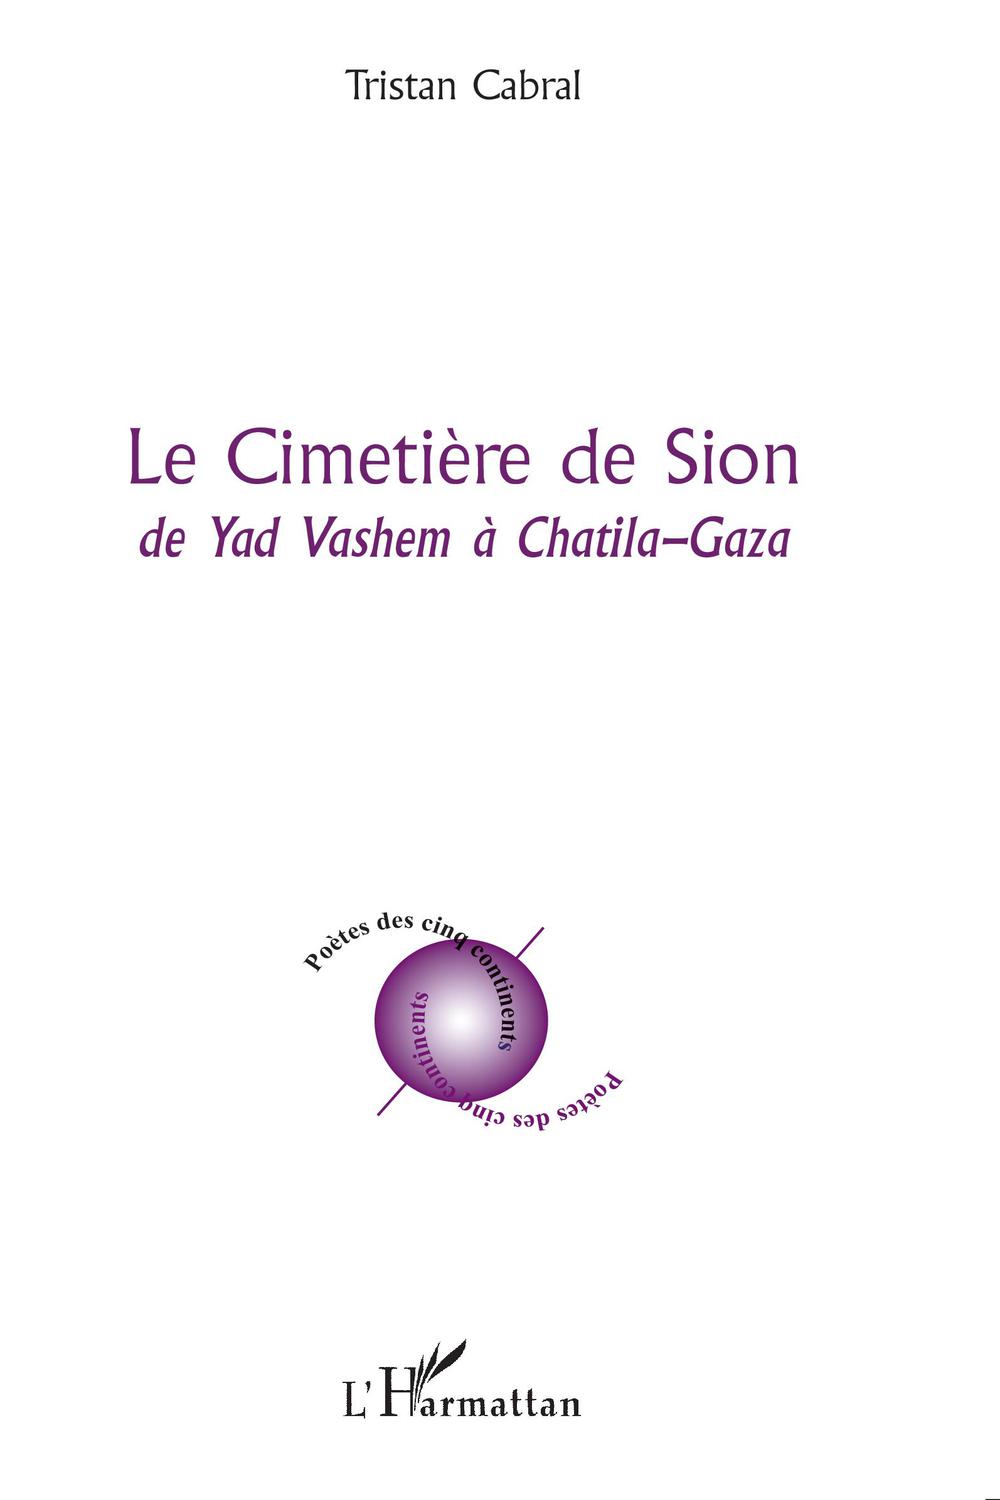 Le Cimétière de Sion - Tristan Cabral